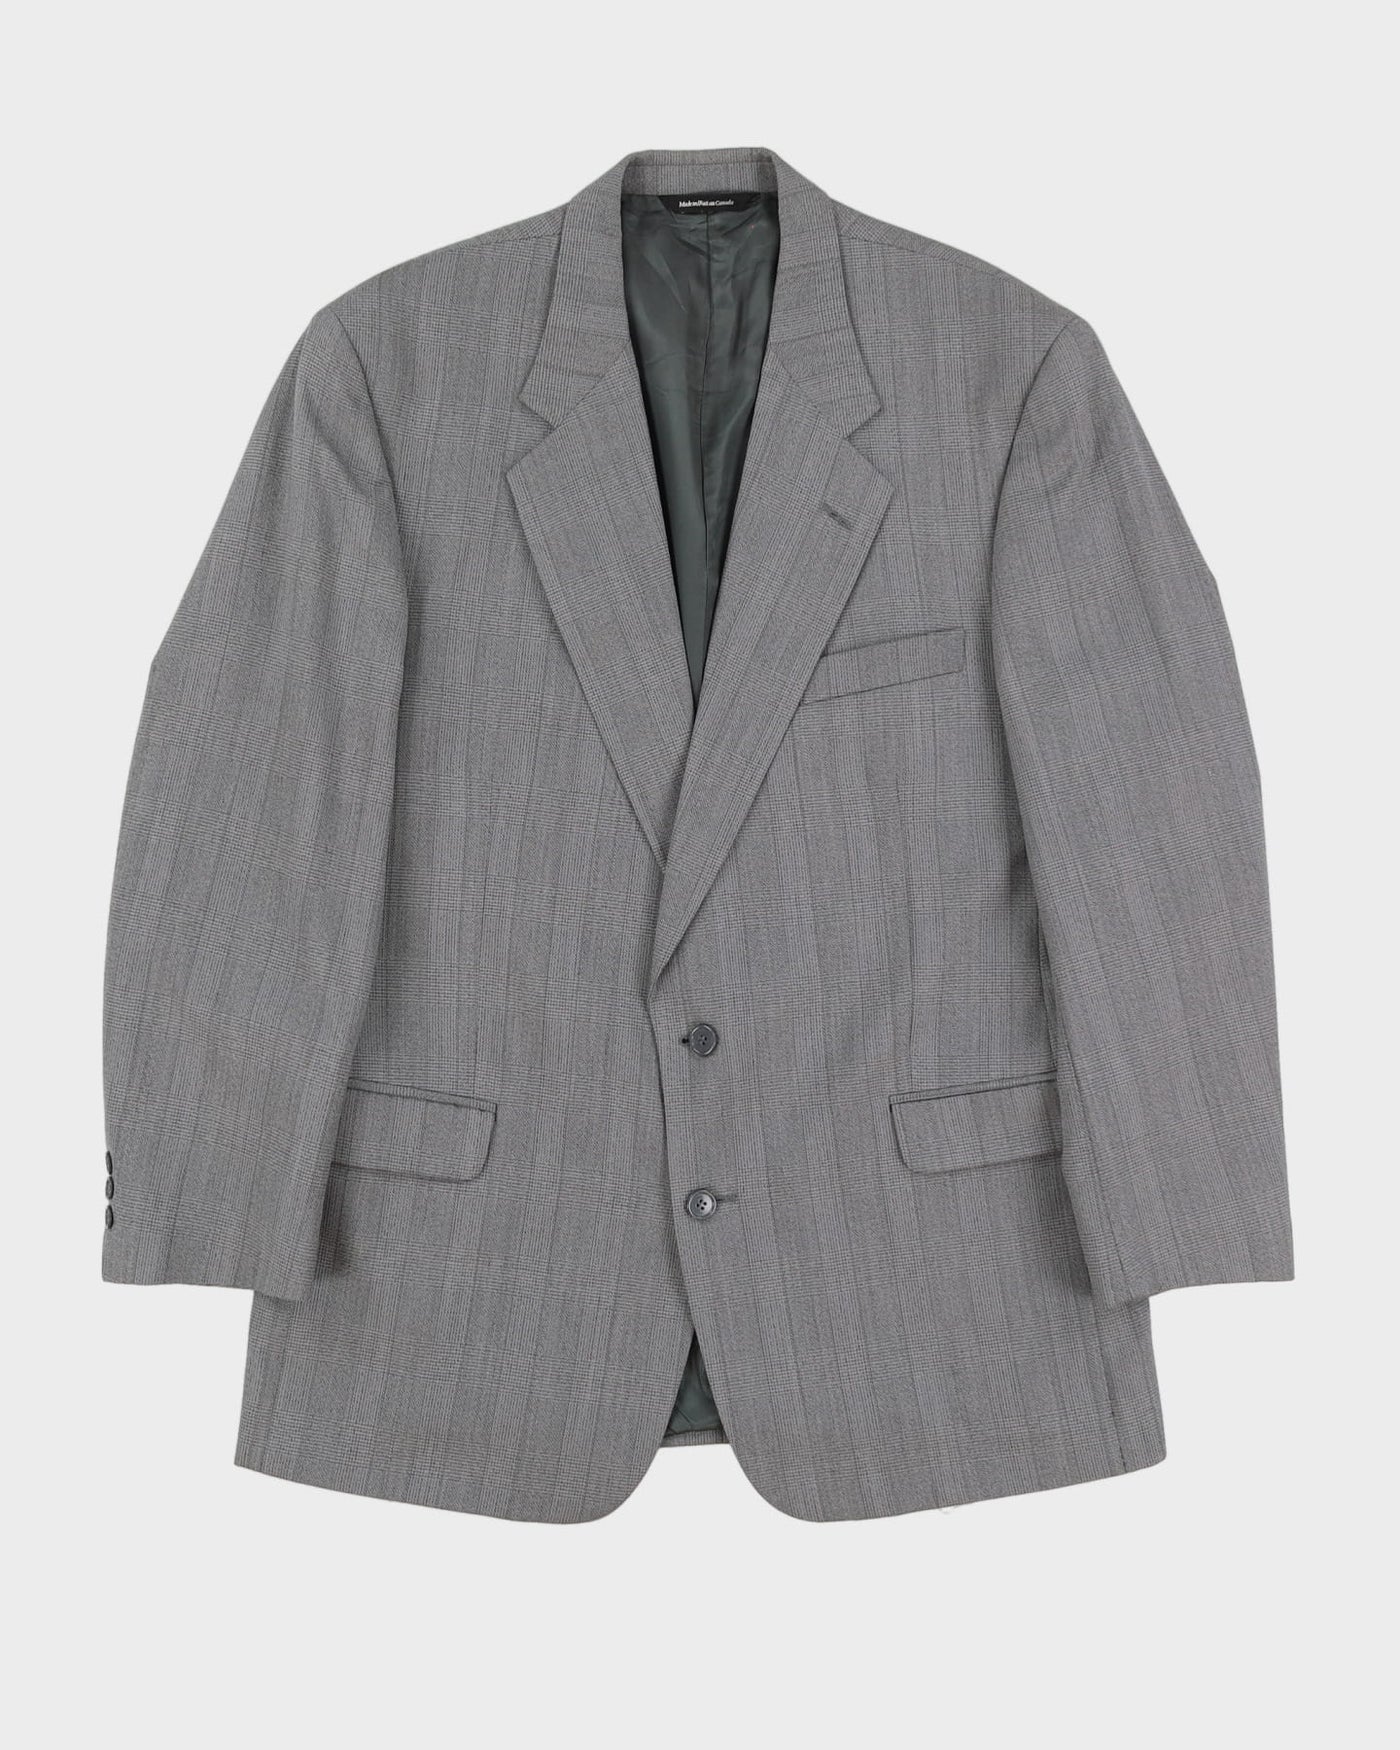 Jones New York Grey Two-Piece Suit - CH45 W35